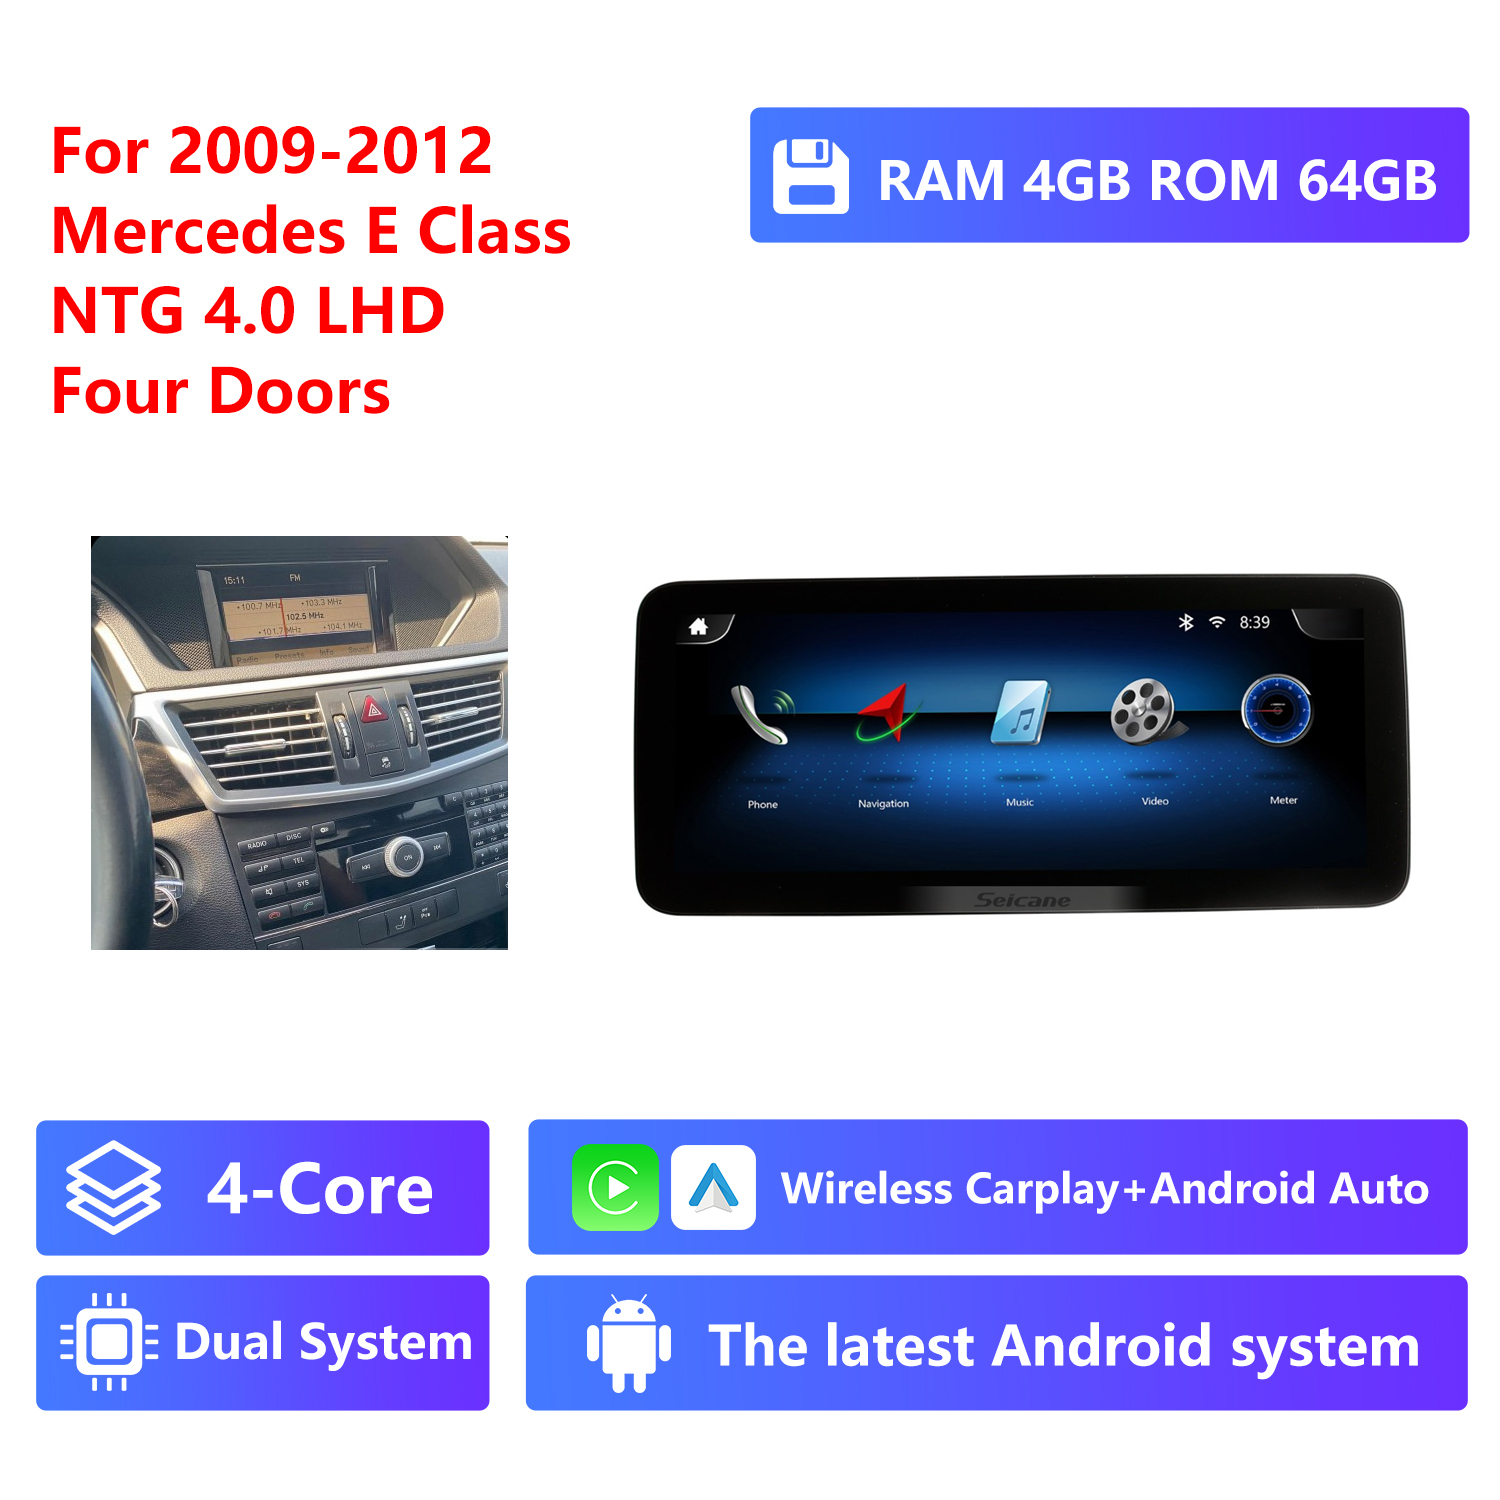 4-Core RAM 4G ROM 64G,LHD,NTG4.0,four doors